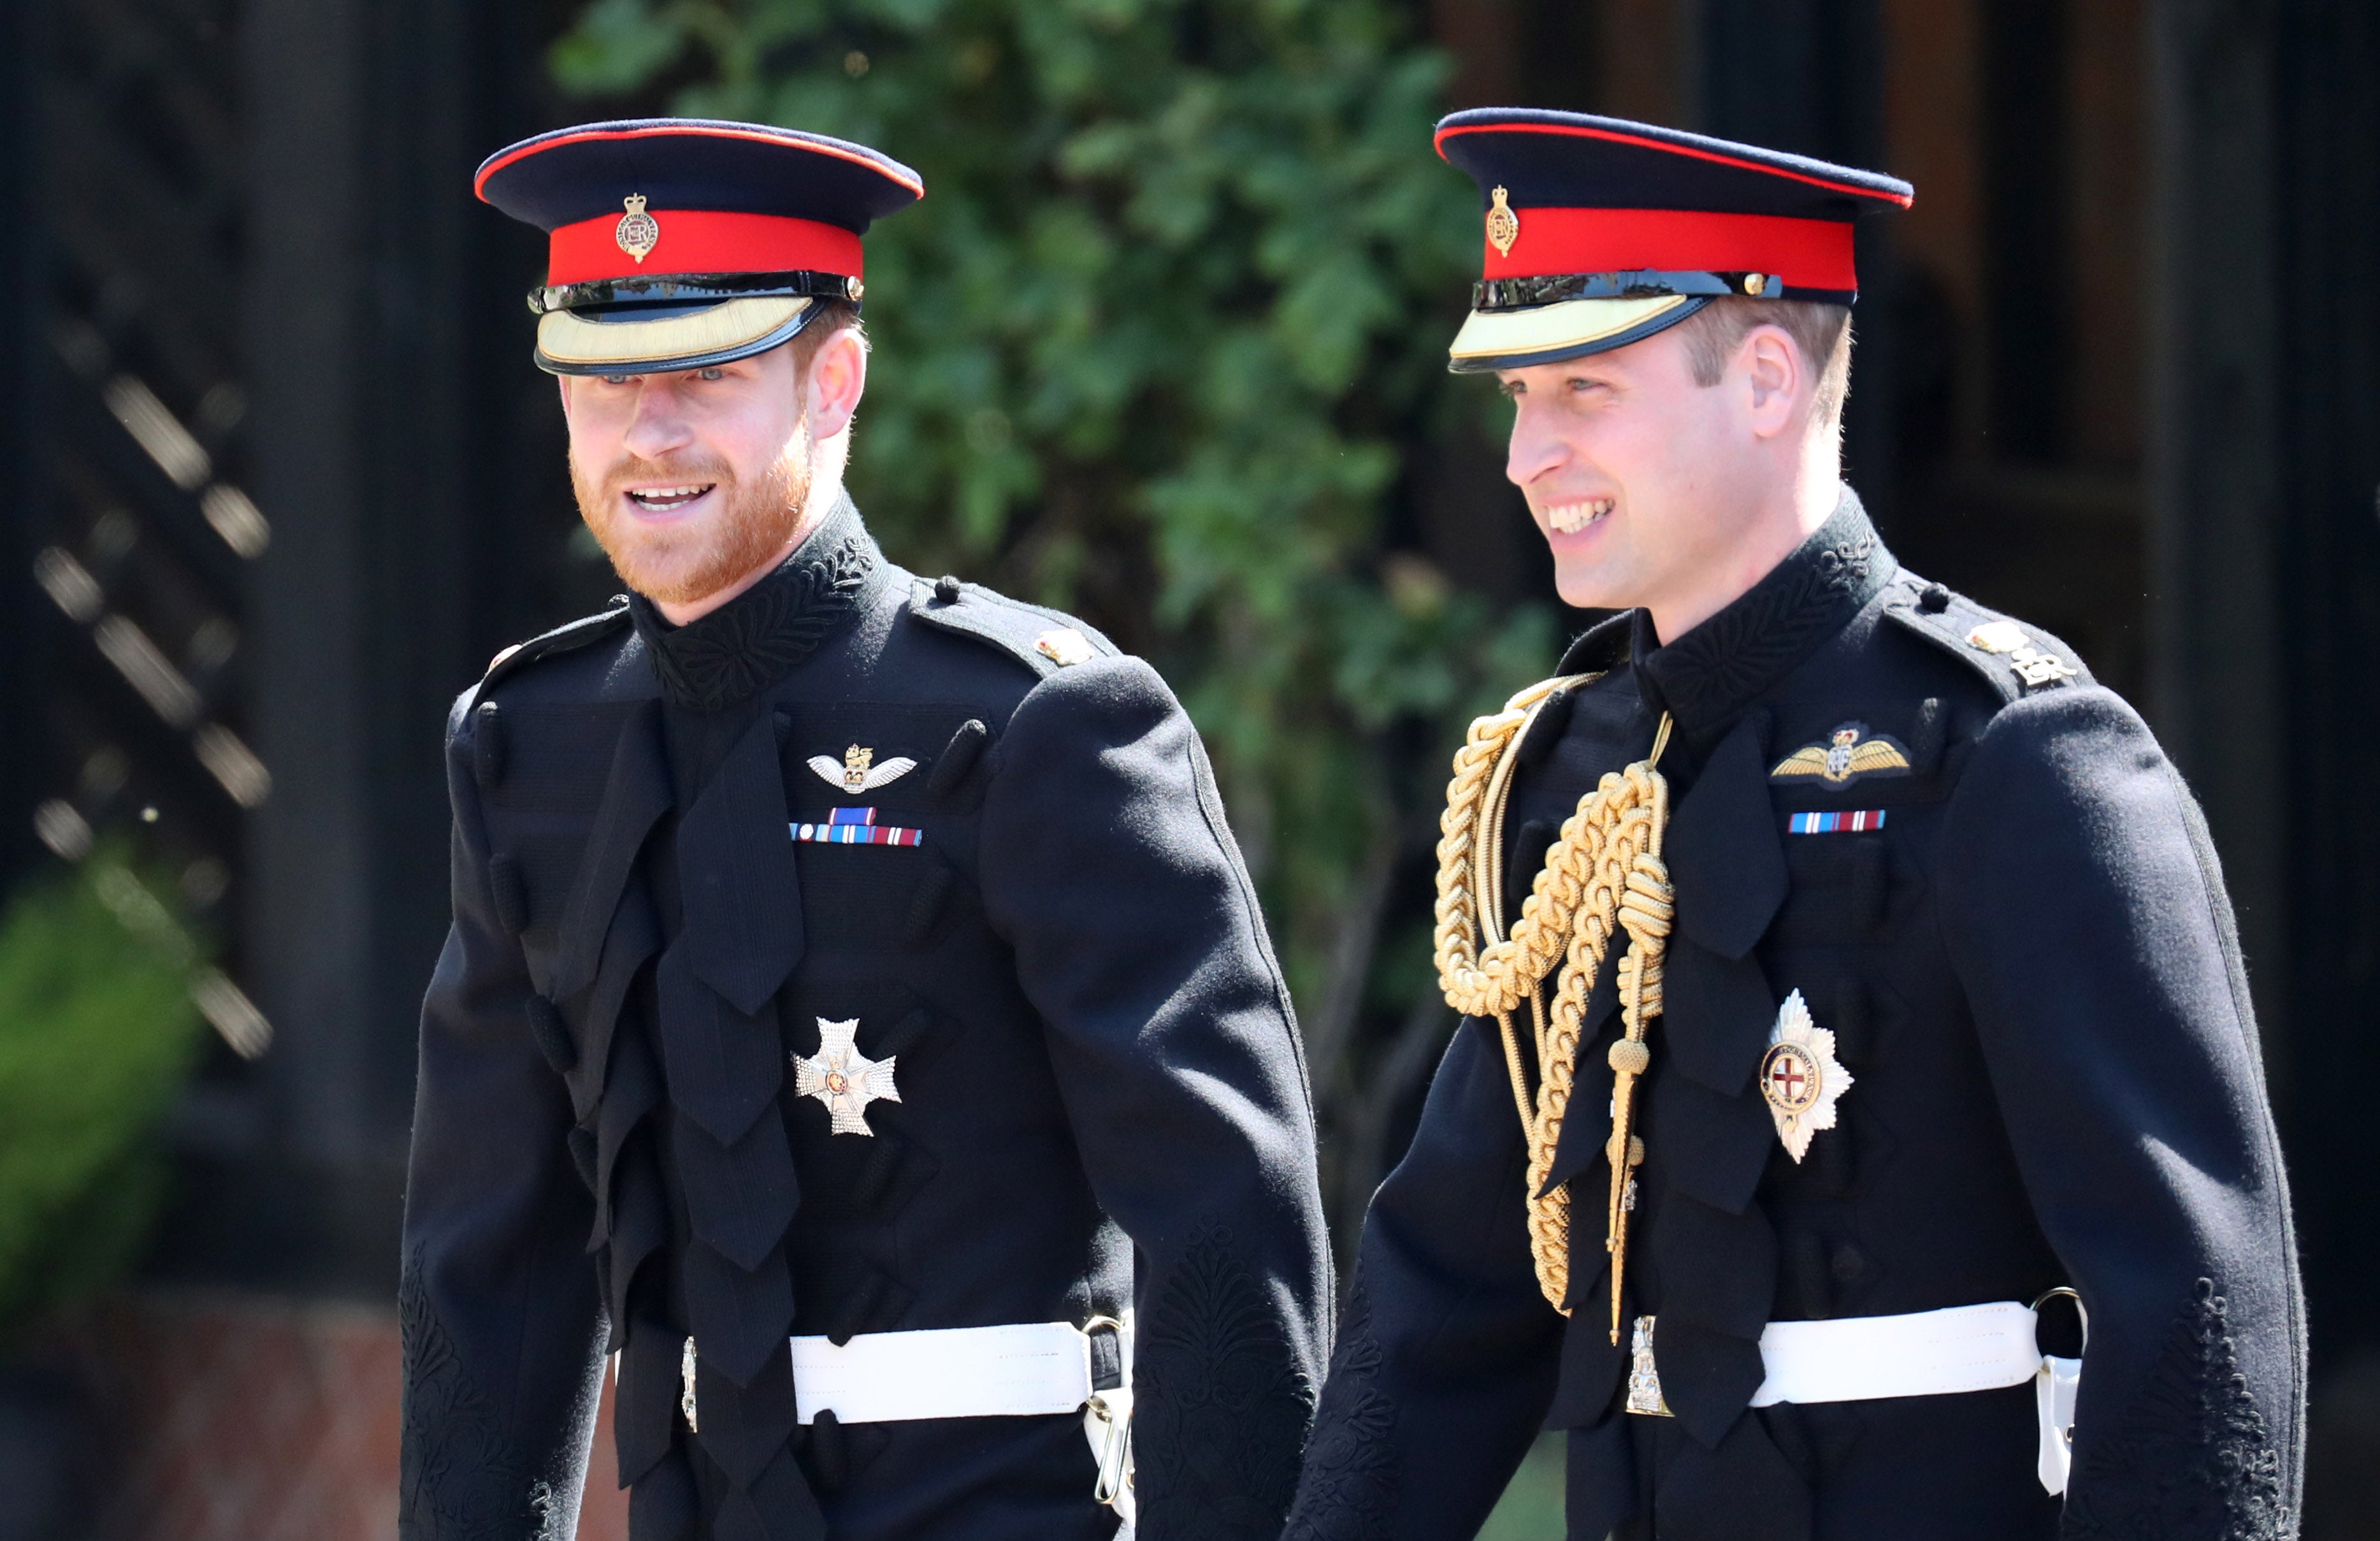 El palacio de Buckingham no se ha pronunciado sobre las acusaciones del príncipe Harry